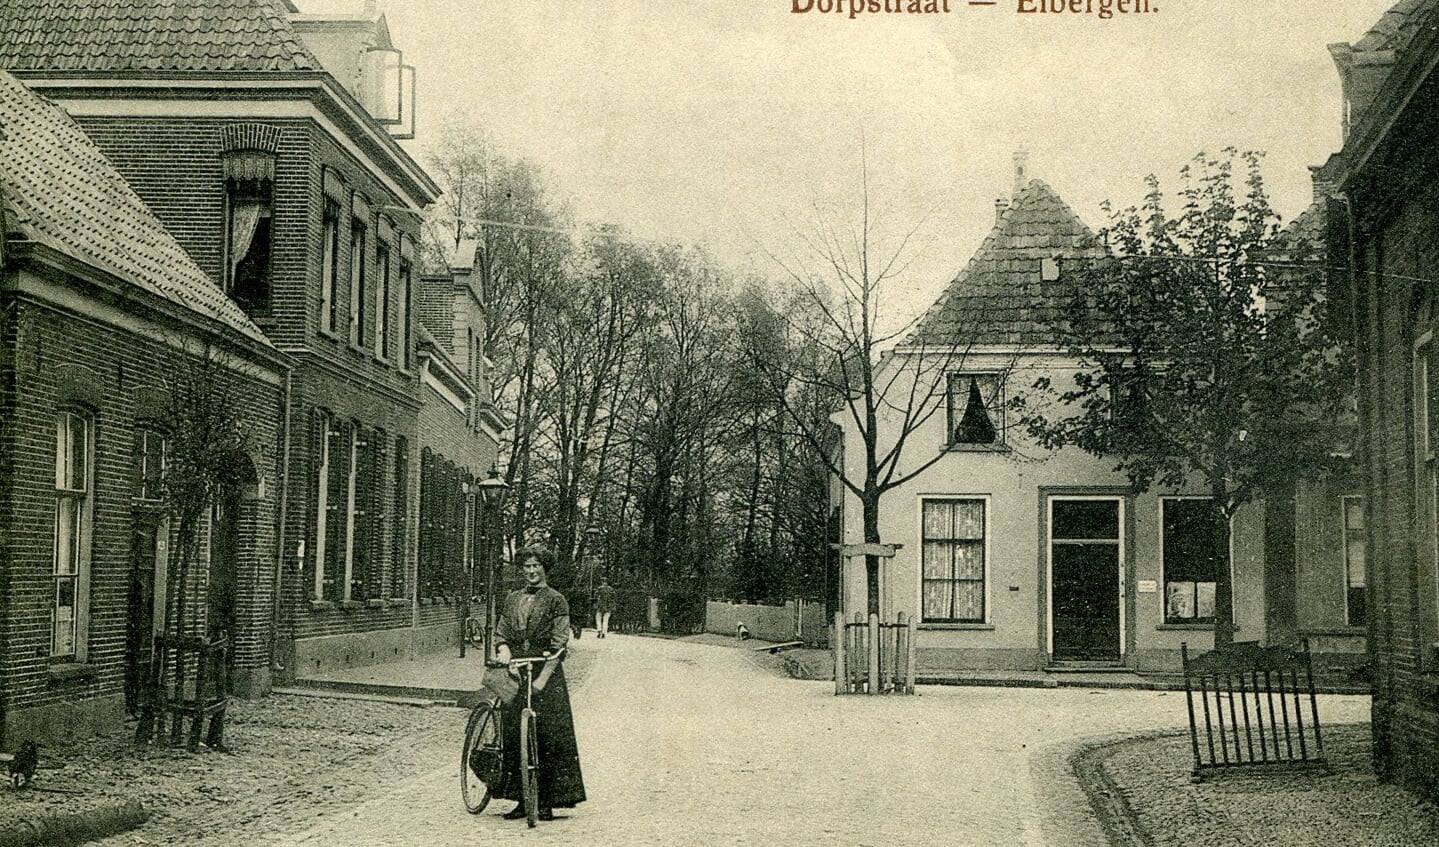 De Dorpsstraat in Eibergen. Foto: PR